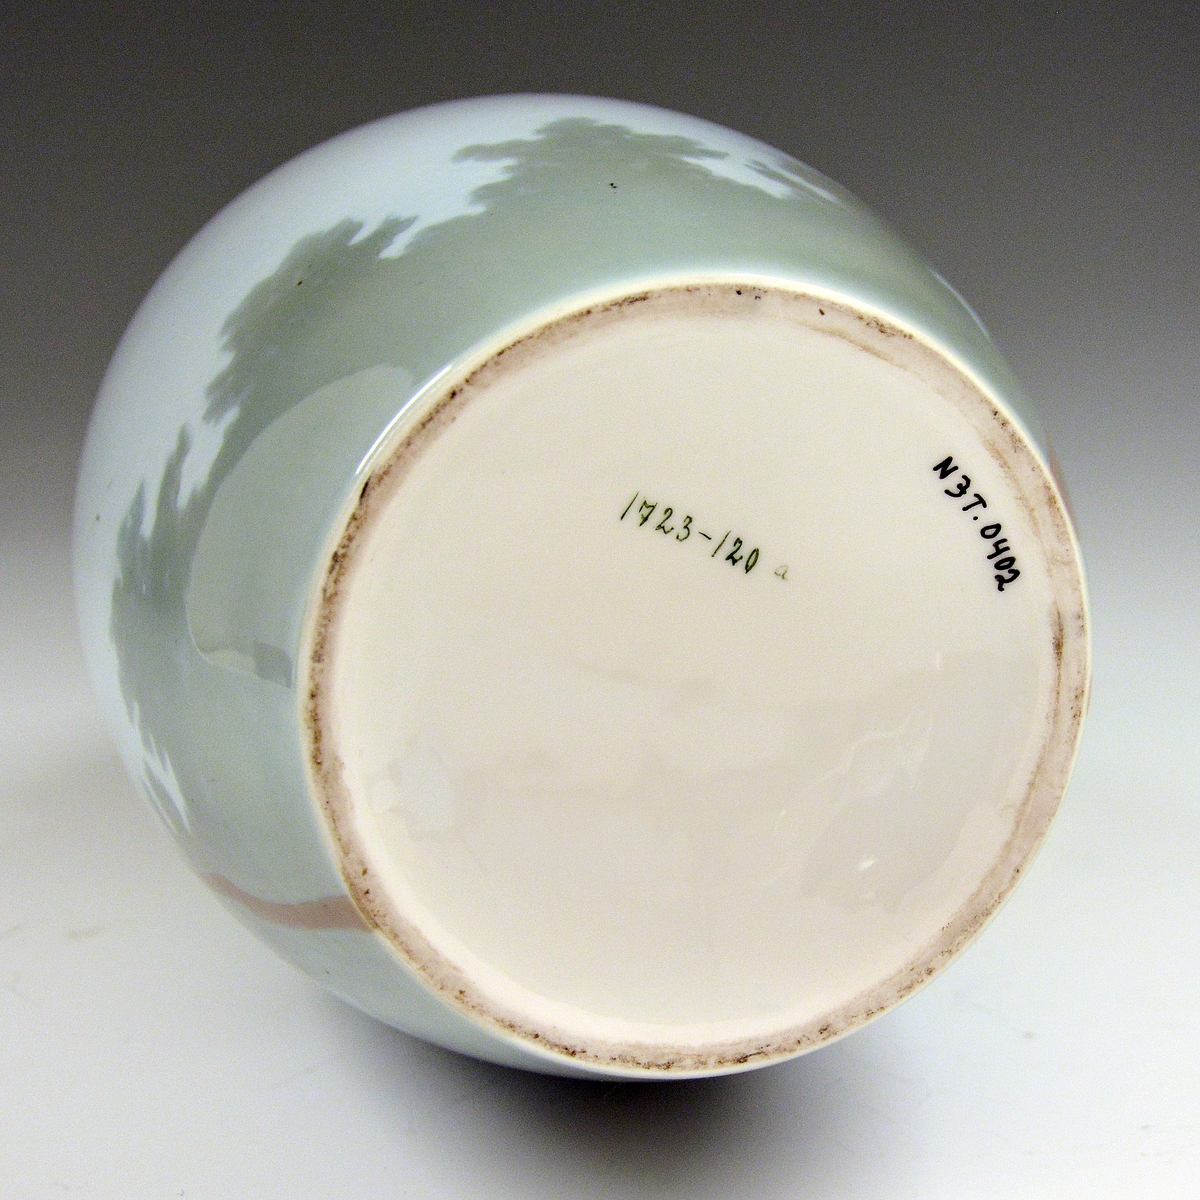 Vase av porselen. Underglasurdekor.
Modell 1723.
Dekornr. 120 Furu og røi tegnet av Halfdan Gran.
Ustemplet.
Gjort om til lampefot.